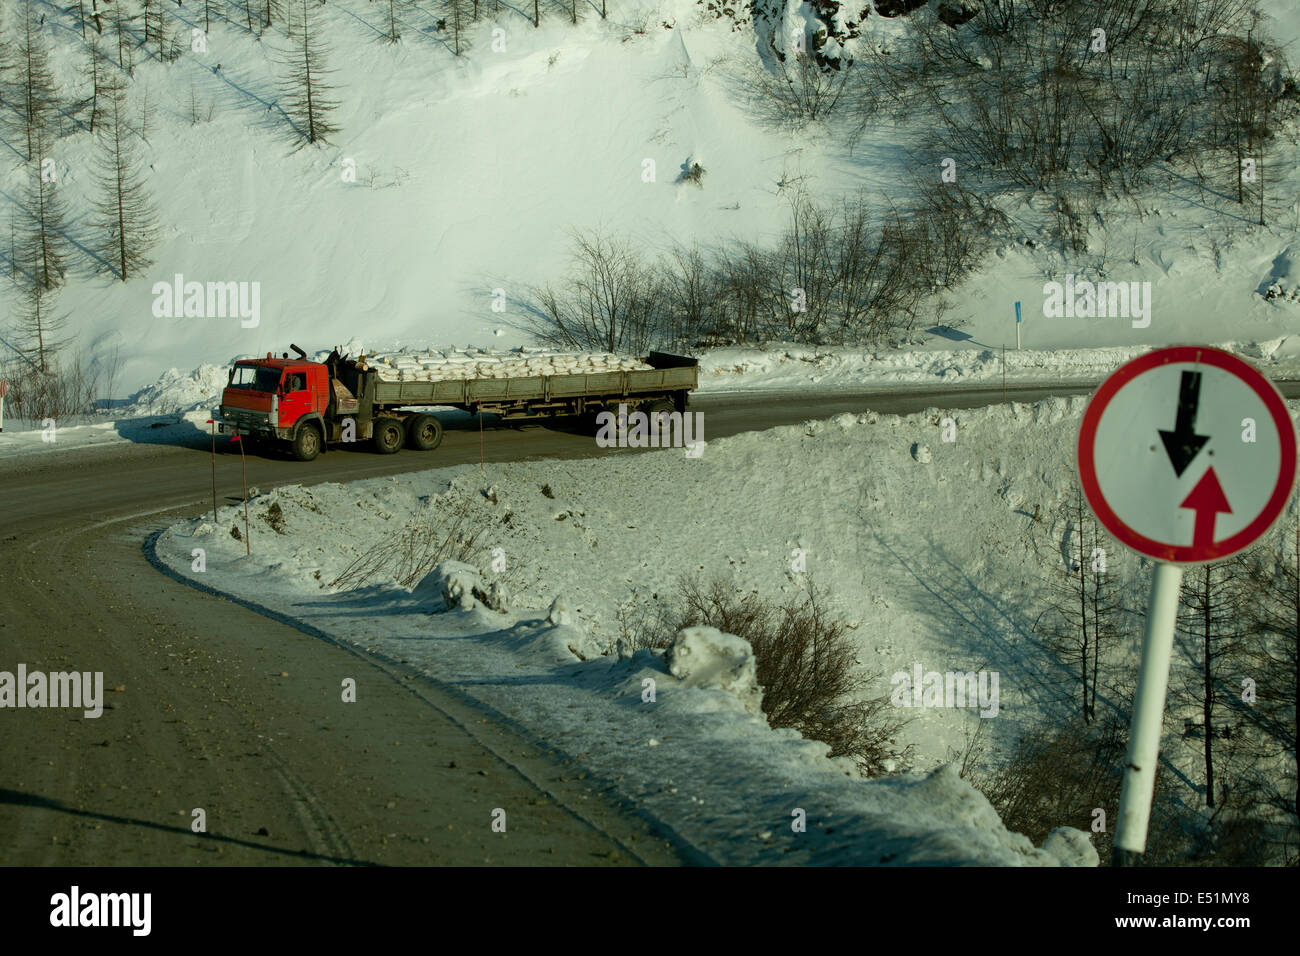 Route de montagne neige camion angle signe de danger Banque D'Images